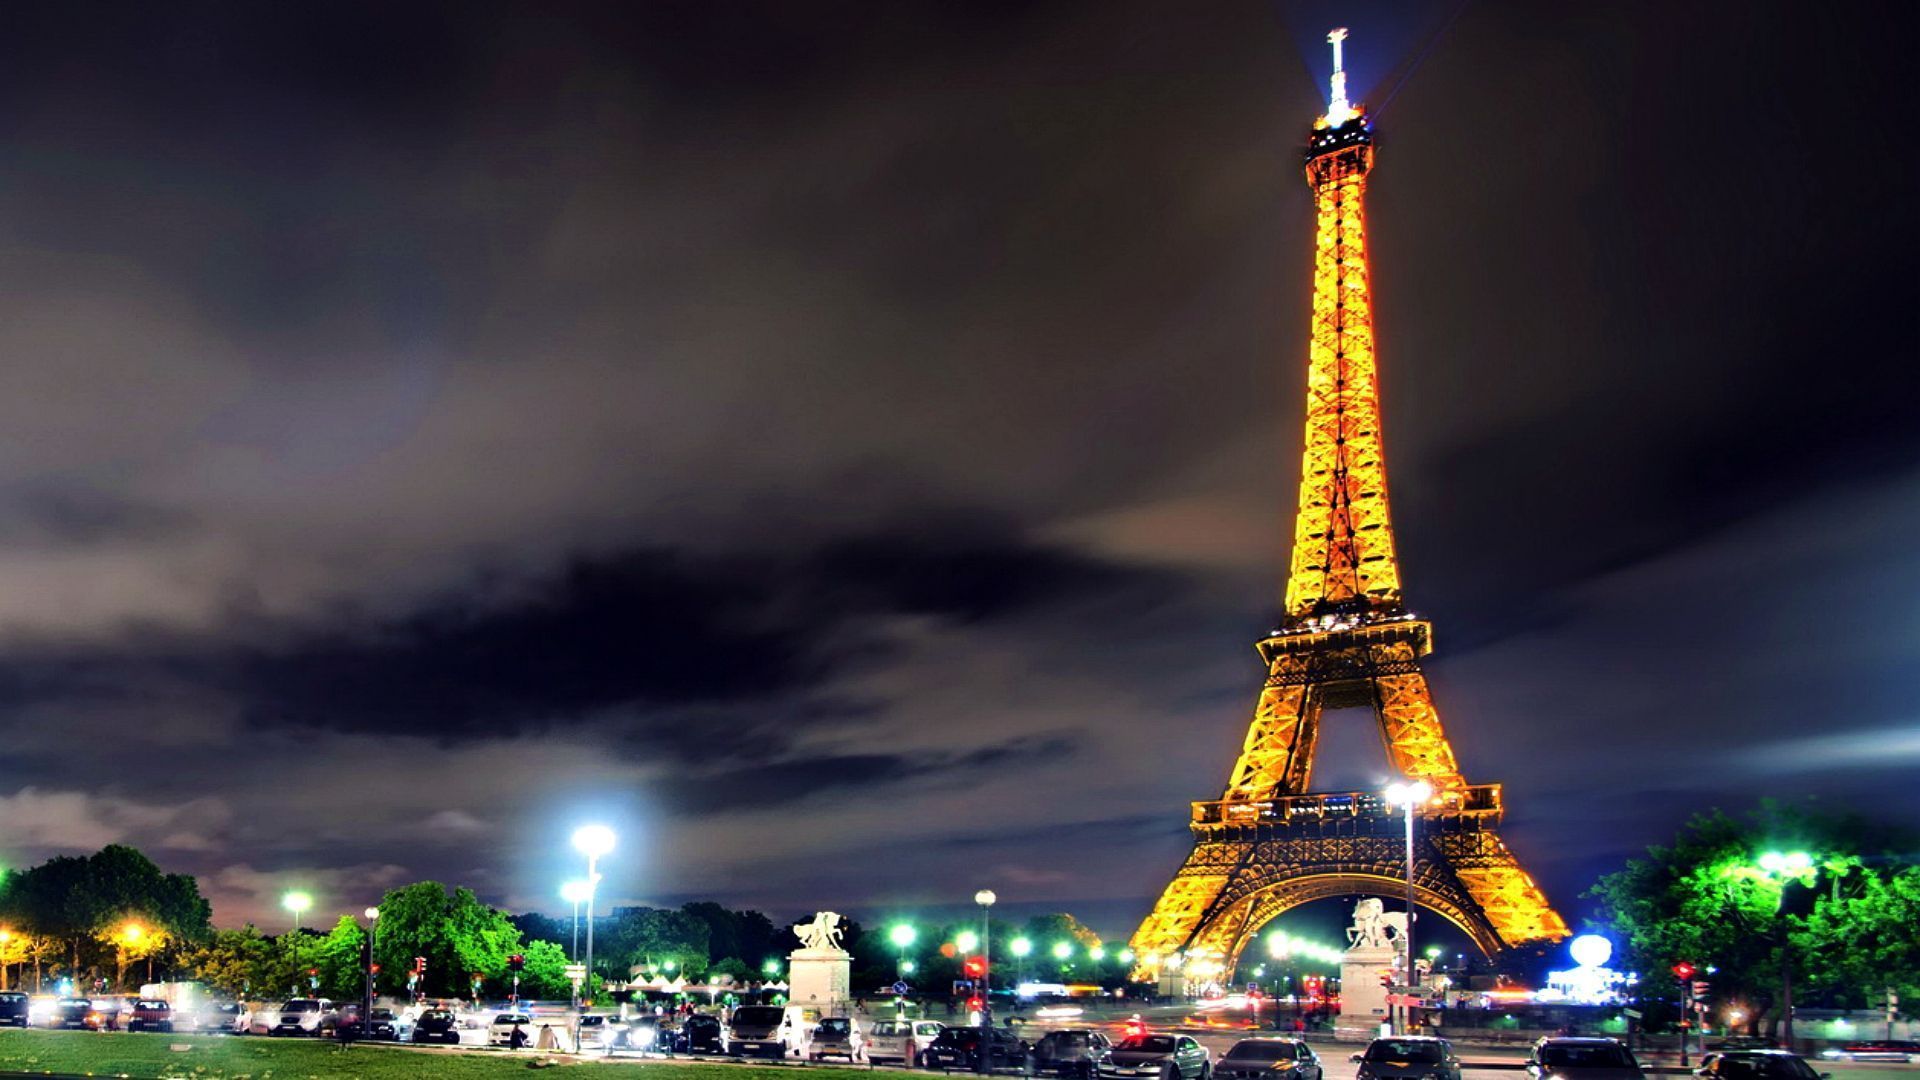 Tháp Eiffel (Eiffel Tower): Khung cảnh đẹp như mơ tại Paris, khiến ai đến đây đều phải trầm trồ và cảm thấy phấn khích. Tháo dời được gần 130 năm nhưng Tháp Eiffel vẫn luôn là biểu tượng của thành phố ánh sáng và là một điểm đến không thể bỏ lỡ khi đến Paris. Xem hình ảnh để trải nghiệm trọn vẹn sự độc đáo của Tháp Eiffel.